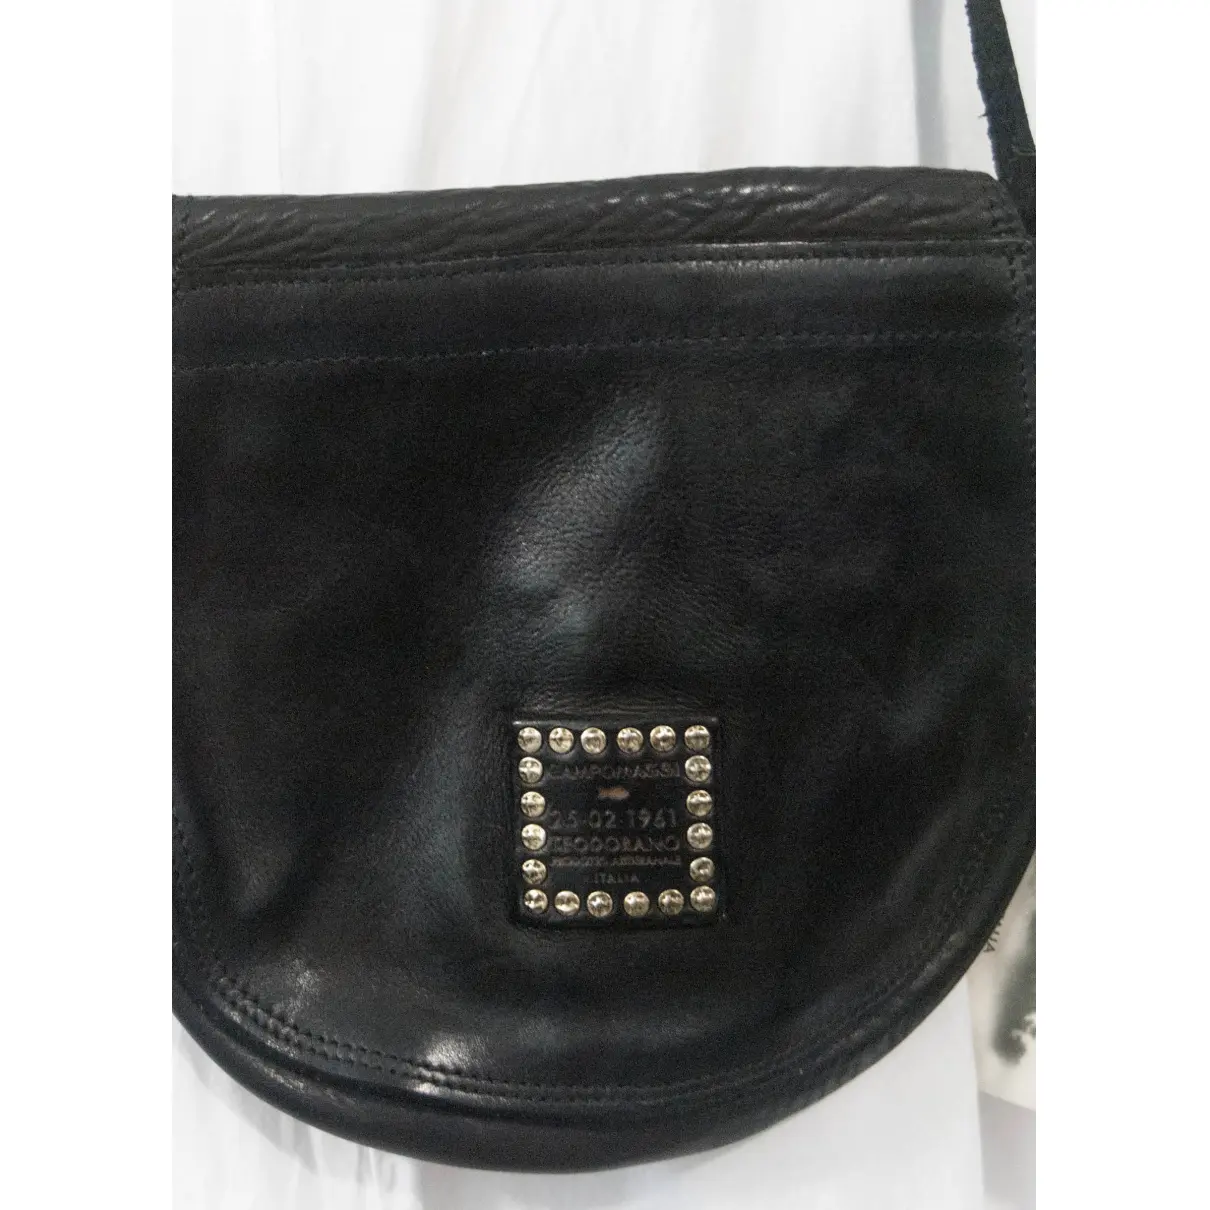 Leather handbag CAMPOMAGGI